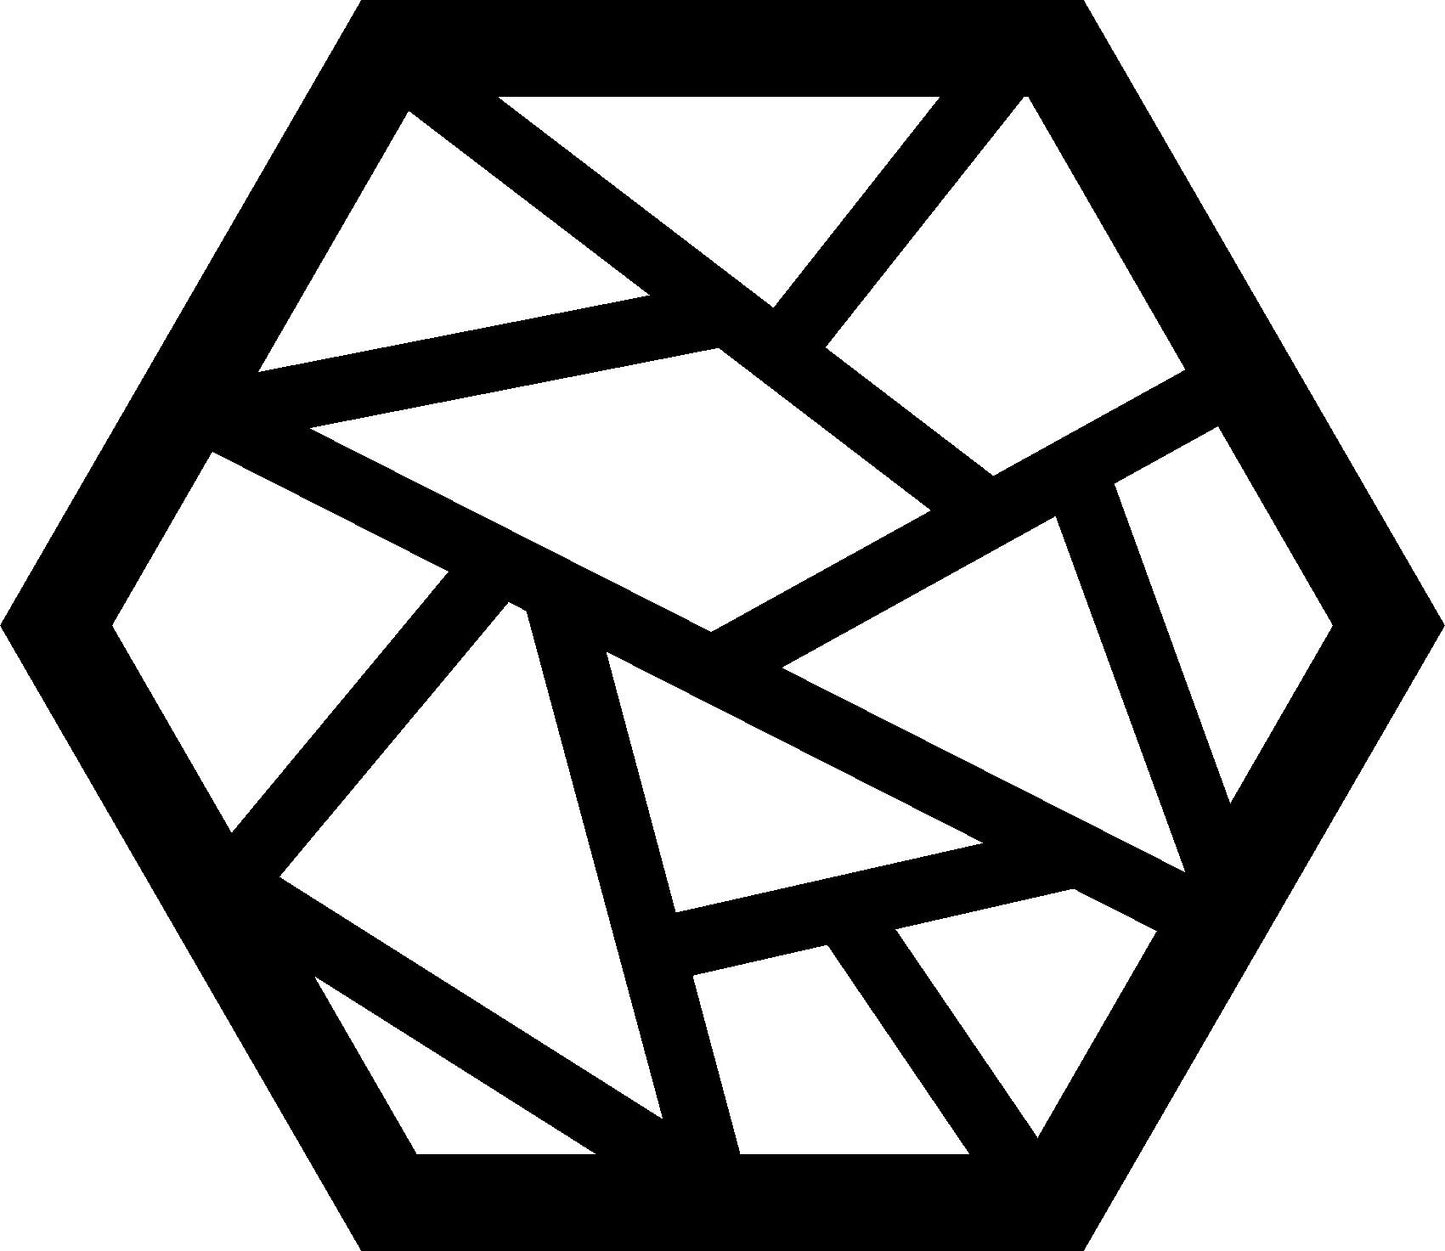 Hexagonal Design 1 (Medium)